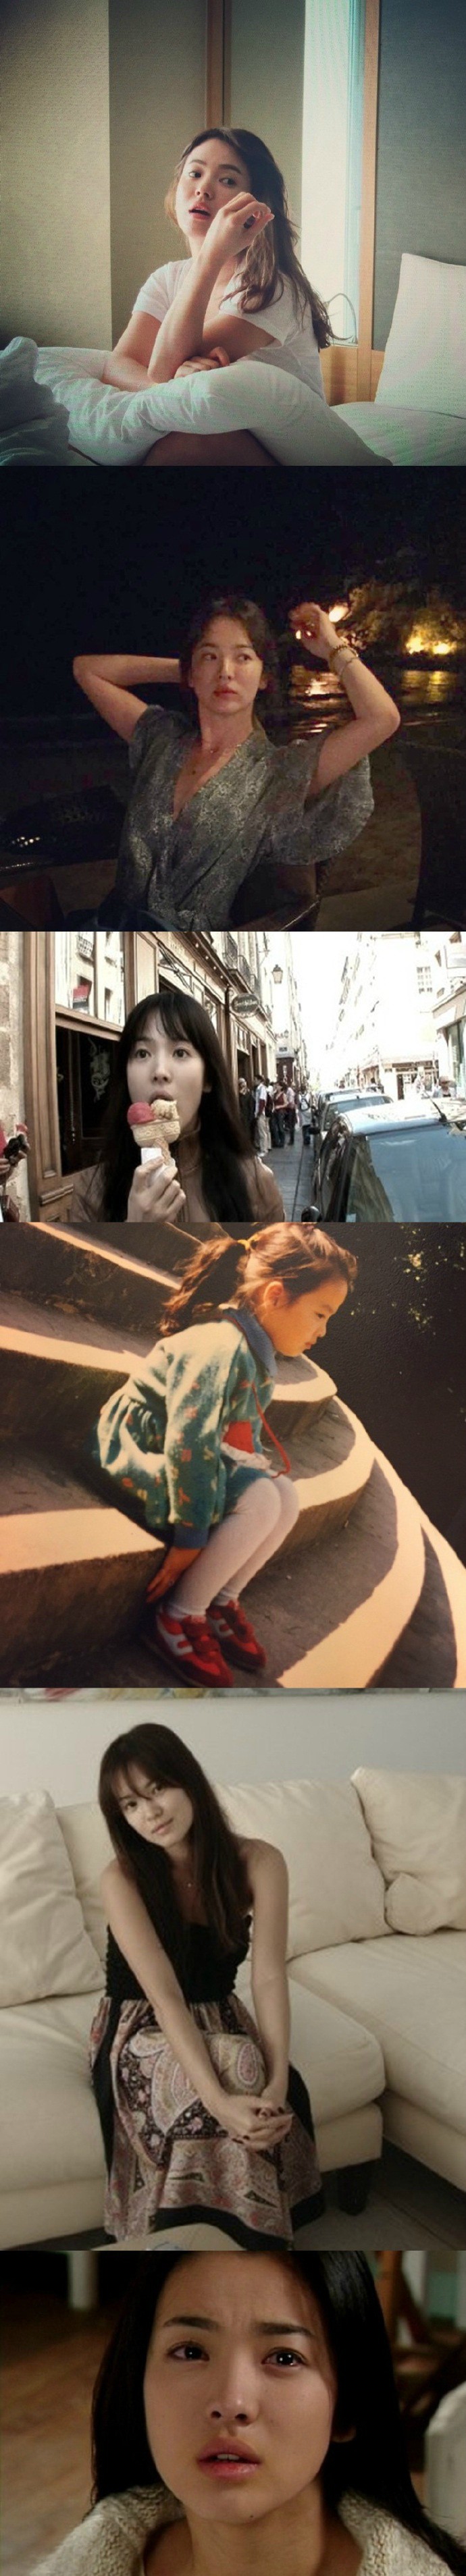 Nhan sắc của Song Hye Kyo: Tạp chí đã đẹp, nhưng xuất sắc nhất là những khoảnh khắc đời thường